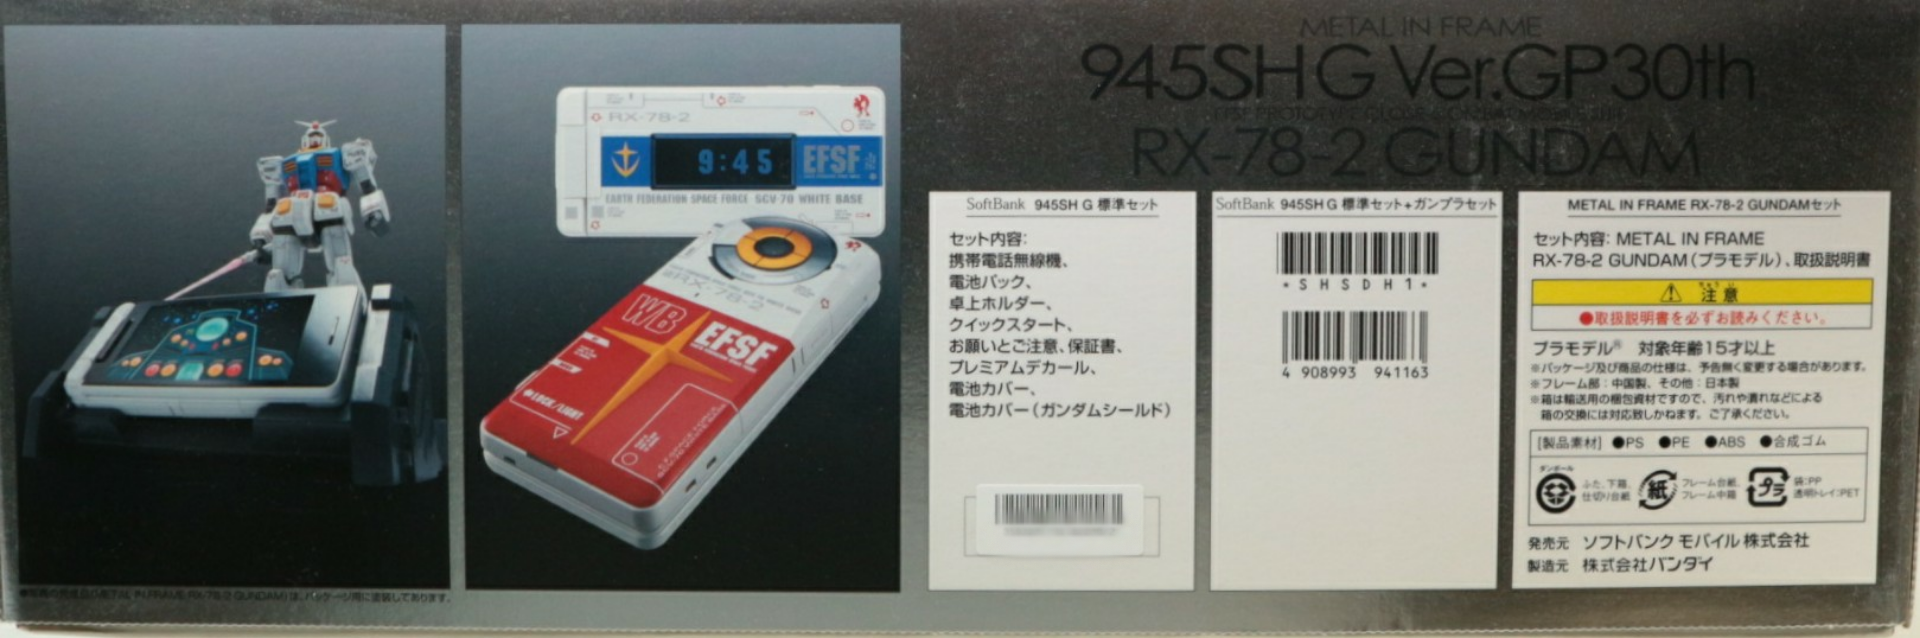 メタルインフレーム945SH G Ver.GP30th RX-78-2ガンダム オリジナル 